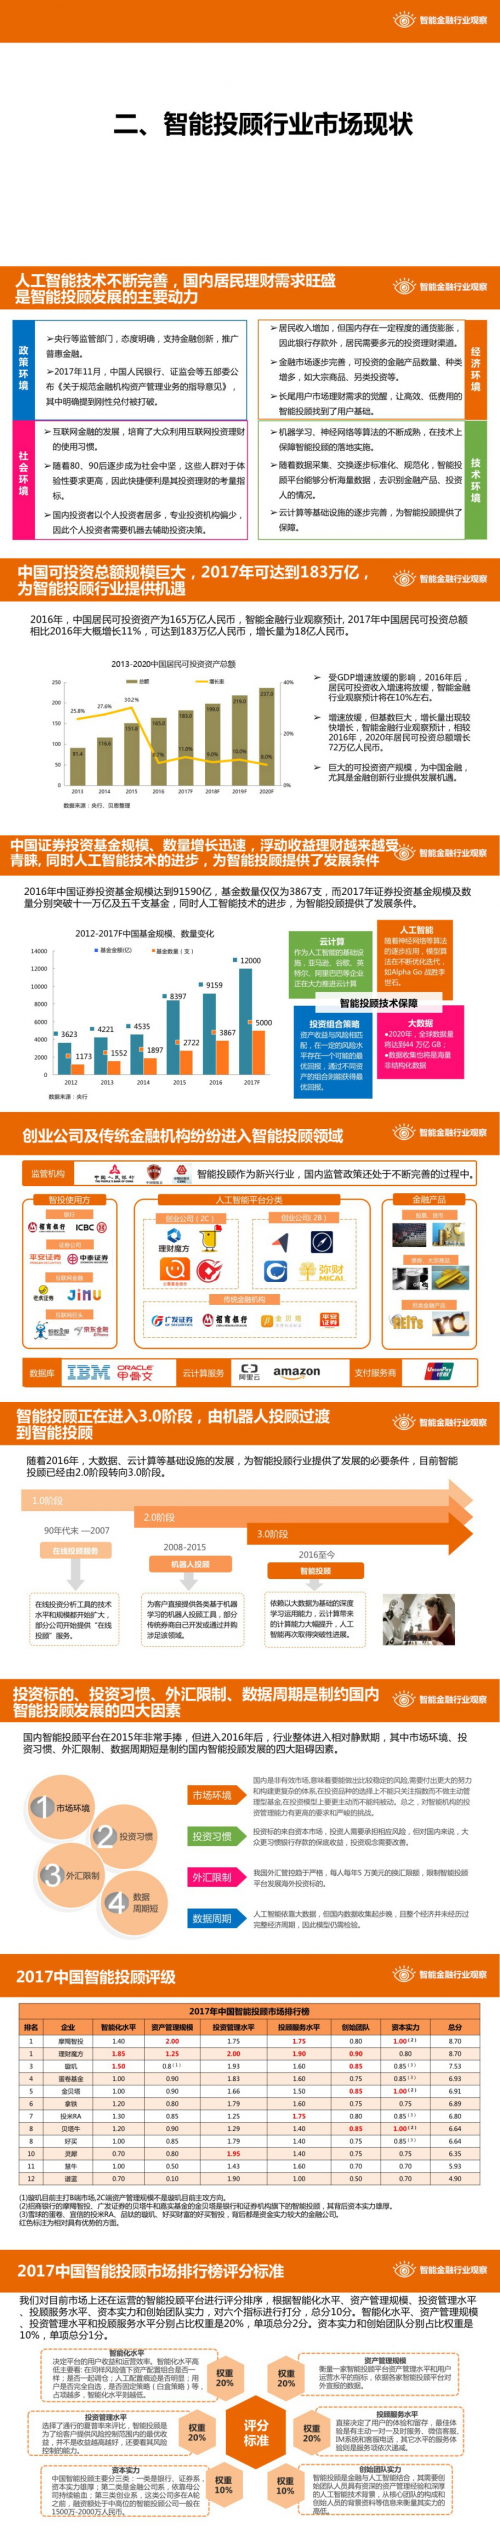 2017年中国智能投顾行业深度分析报告